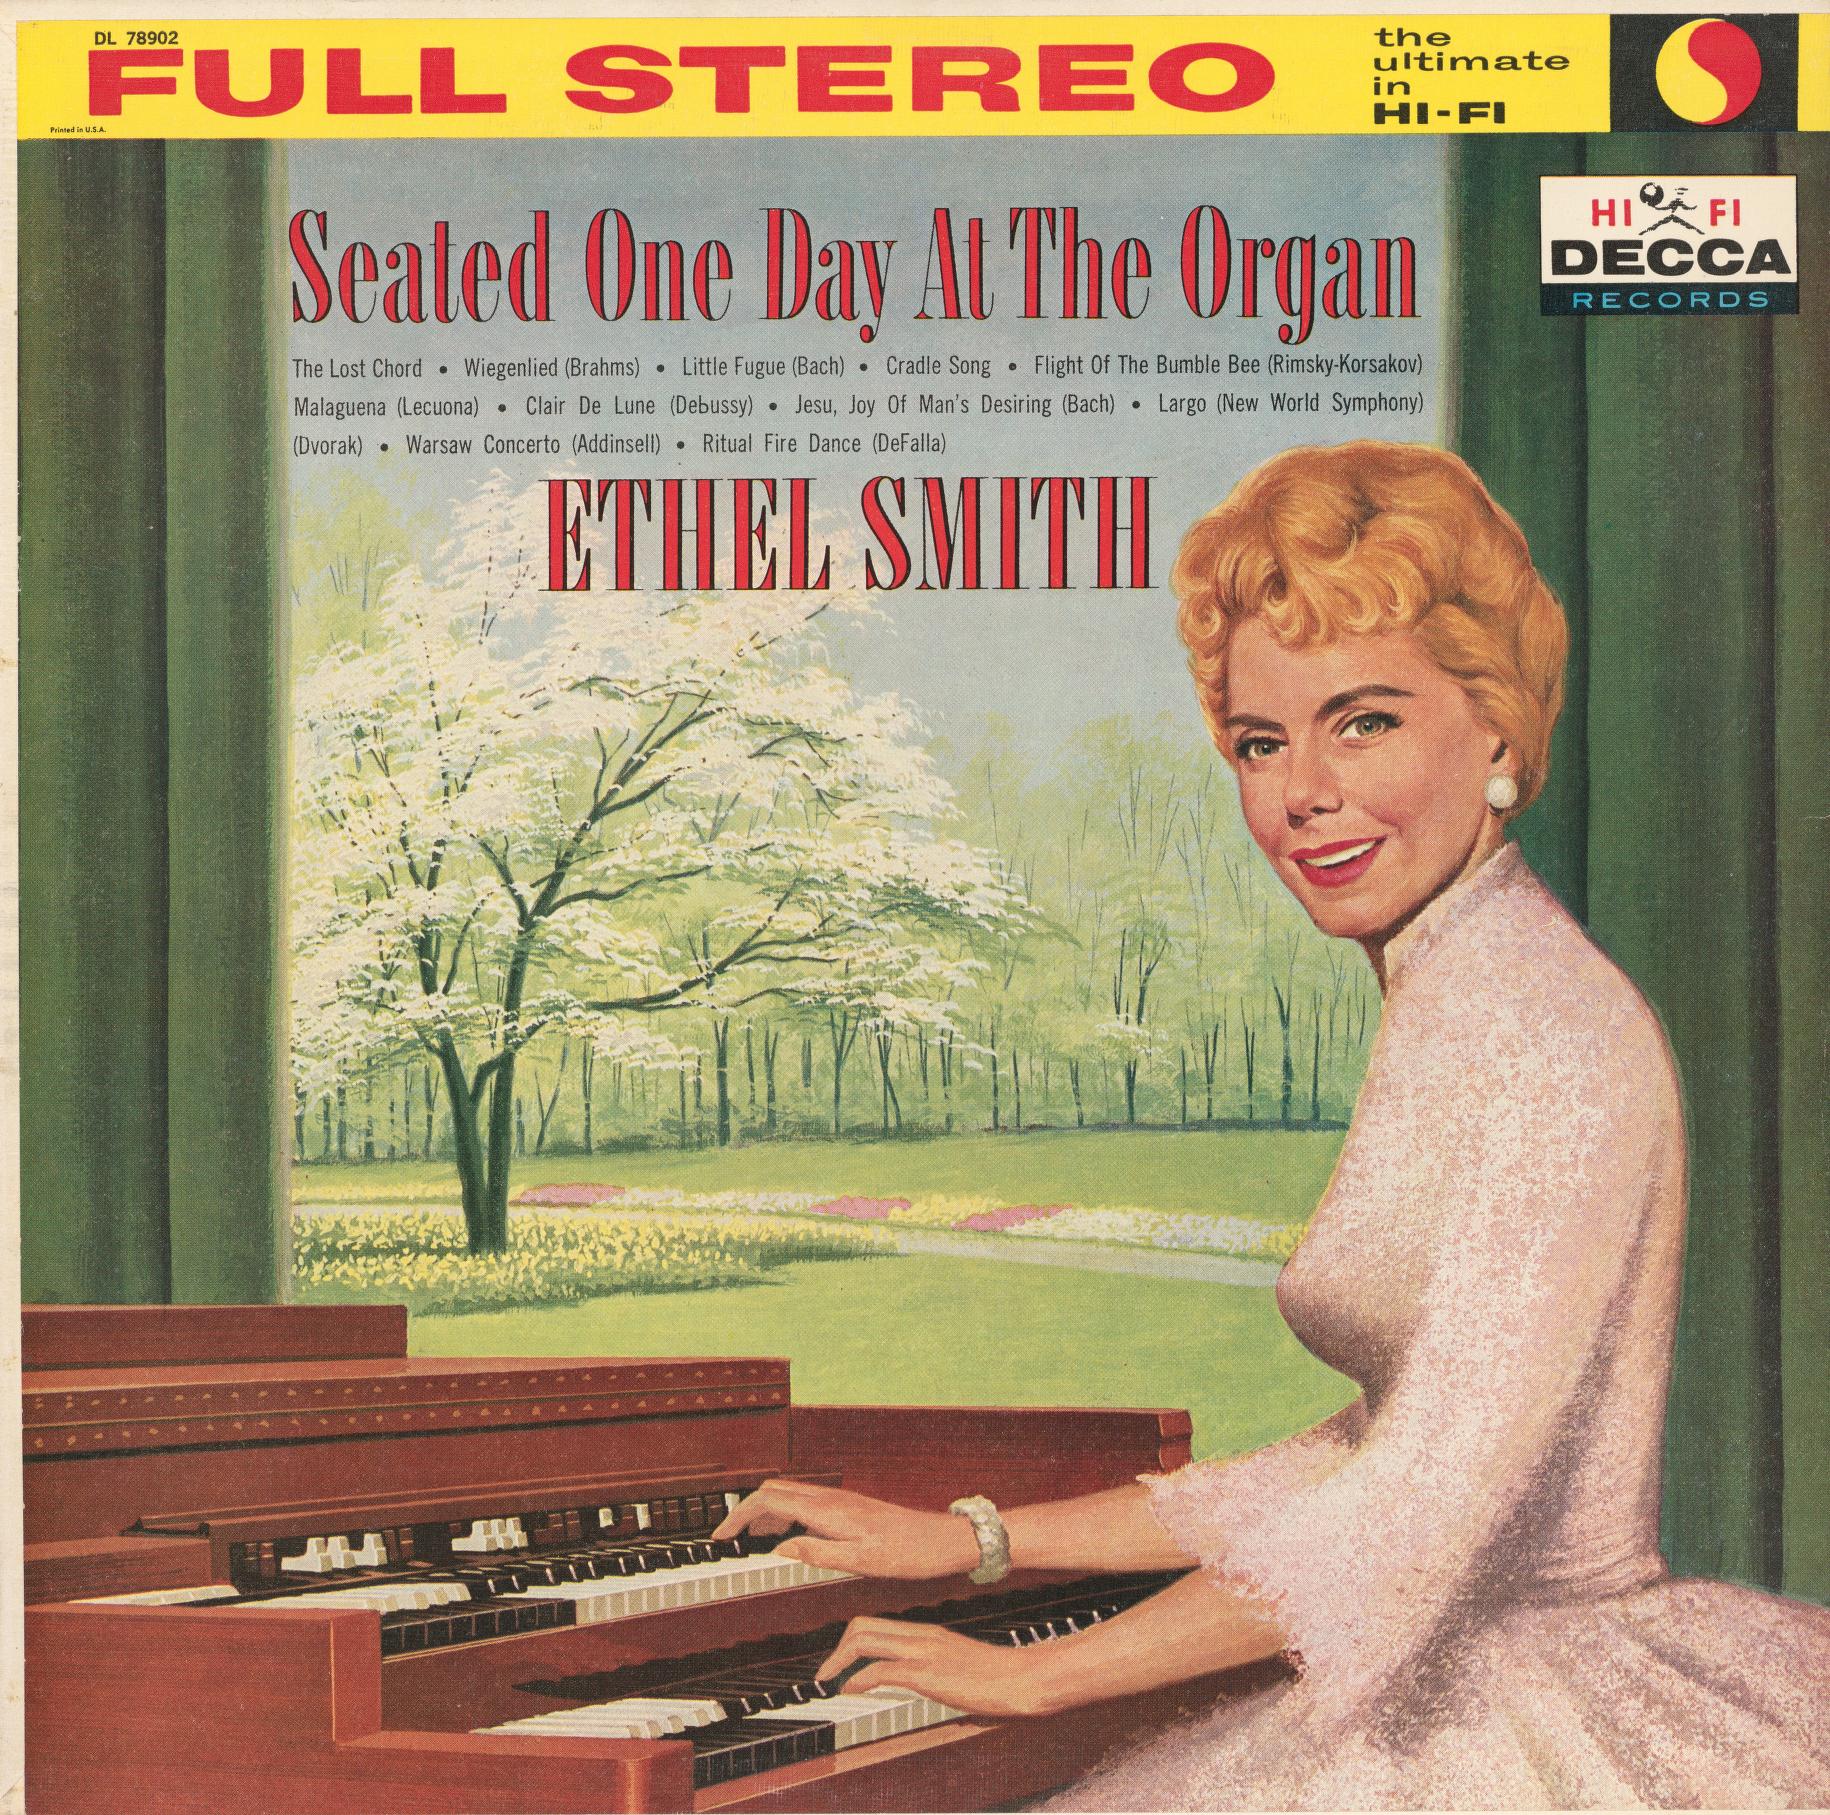 ethel smith organist